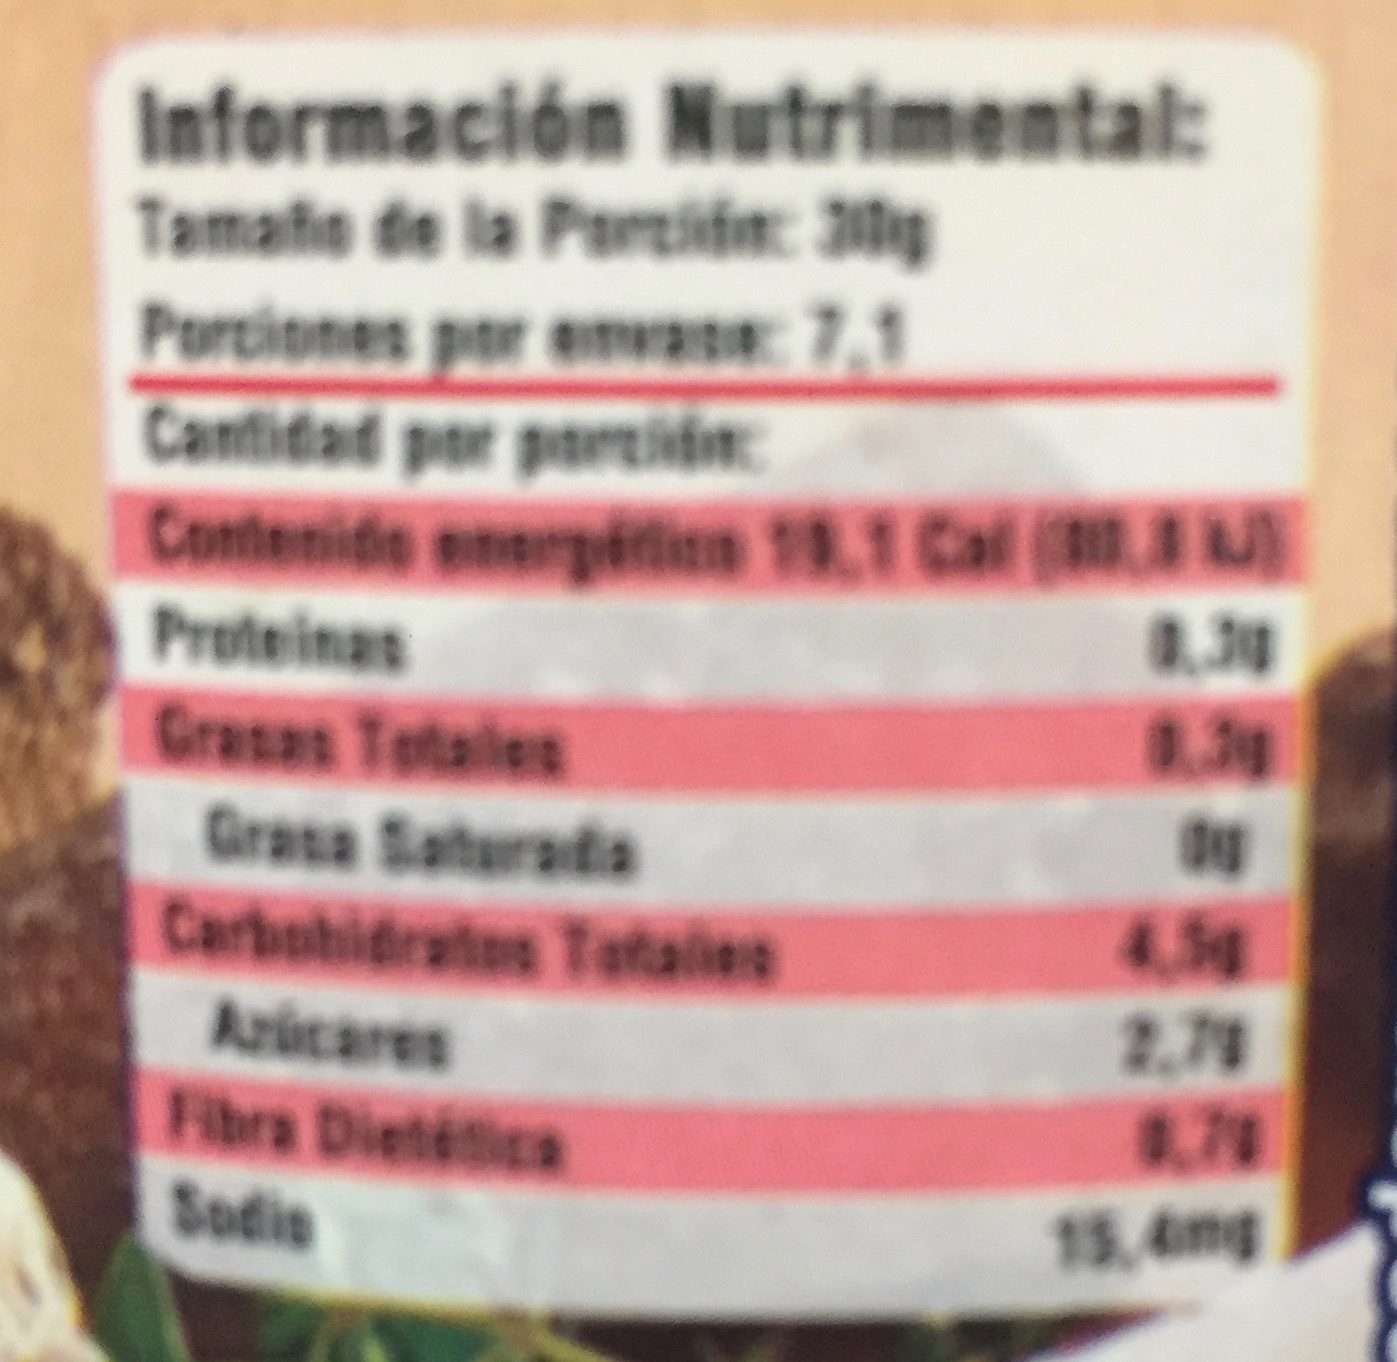 Chipotles San Marcos - Información nutricional